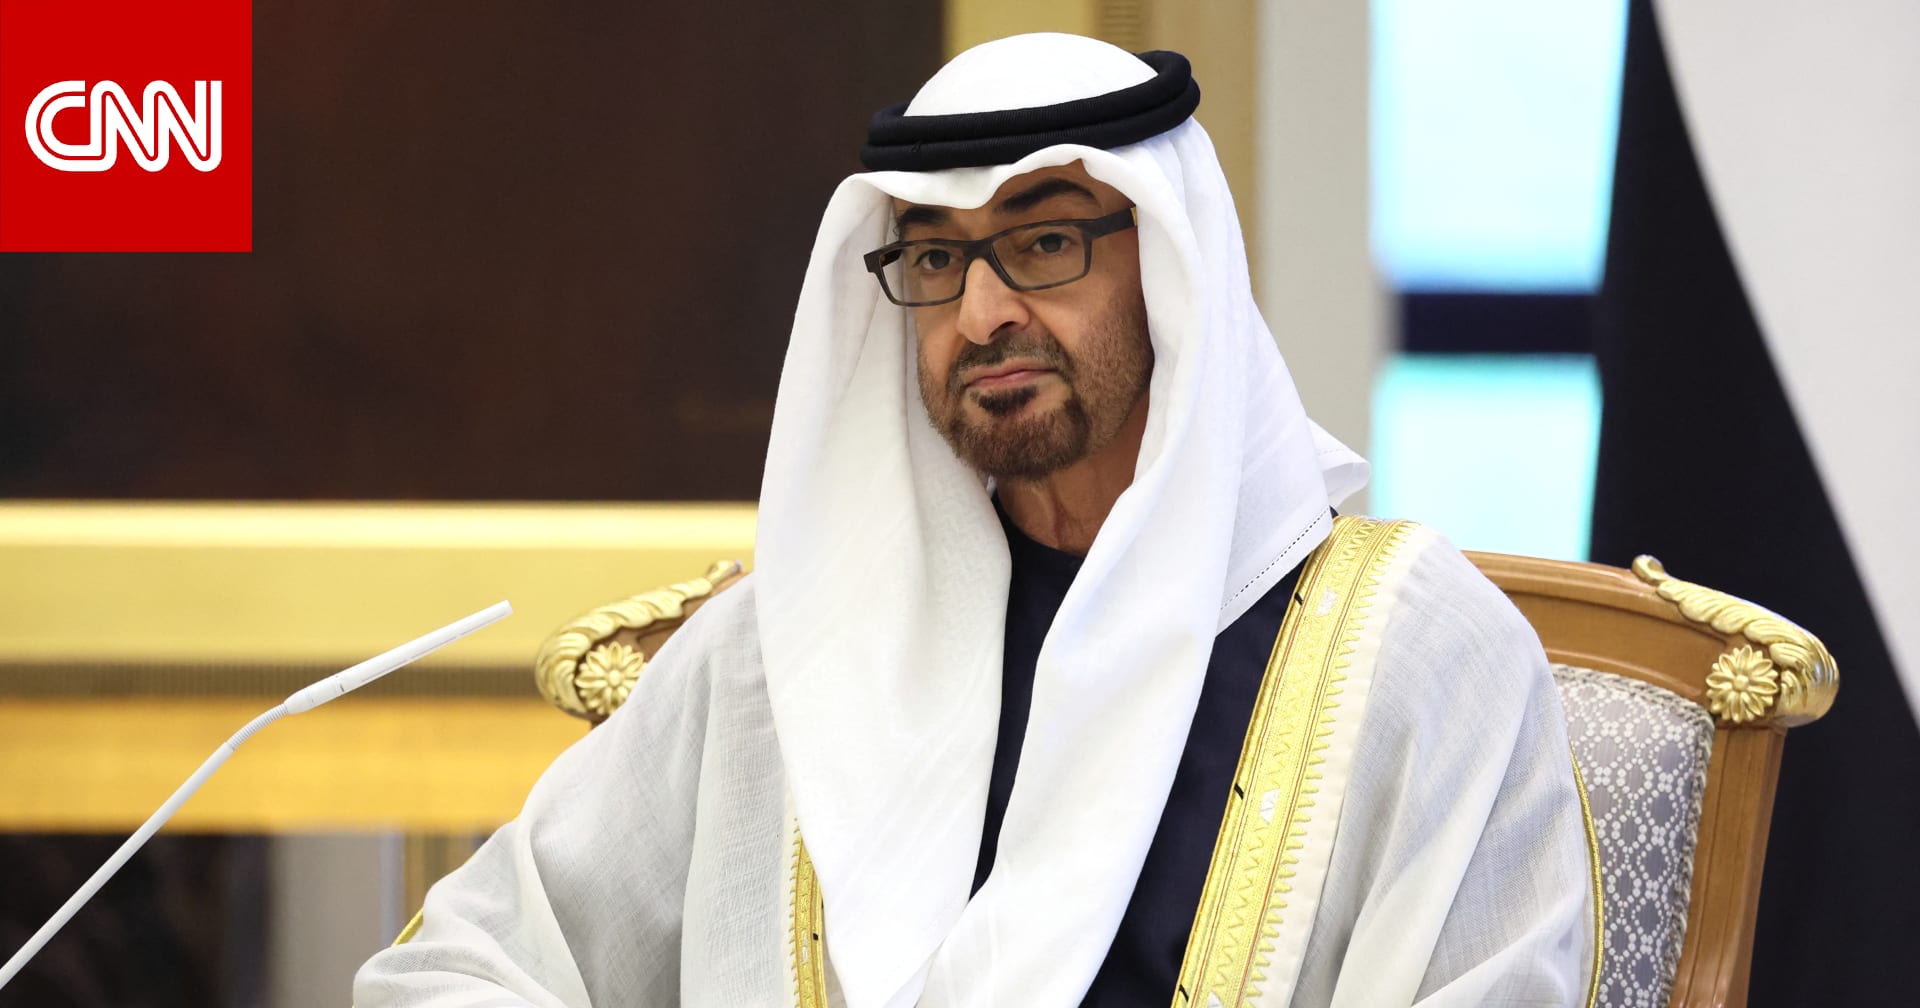 فجر السعيد تُعلق على لفتة رئيس الإمارات تجاه الشيخ مشعل: "سحبت قلوب أهل الكويت معاك"